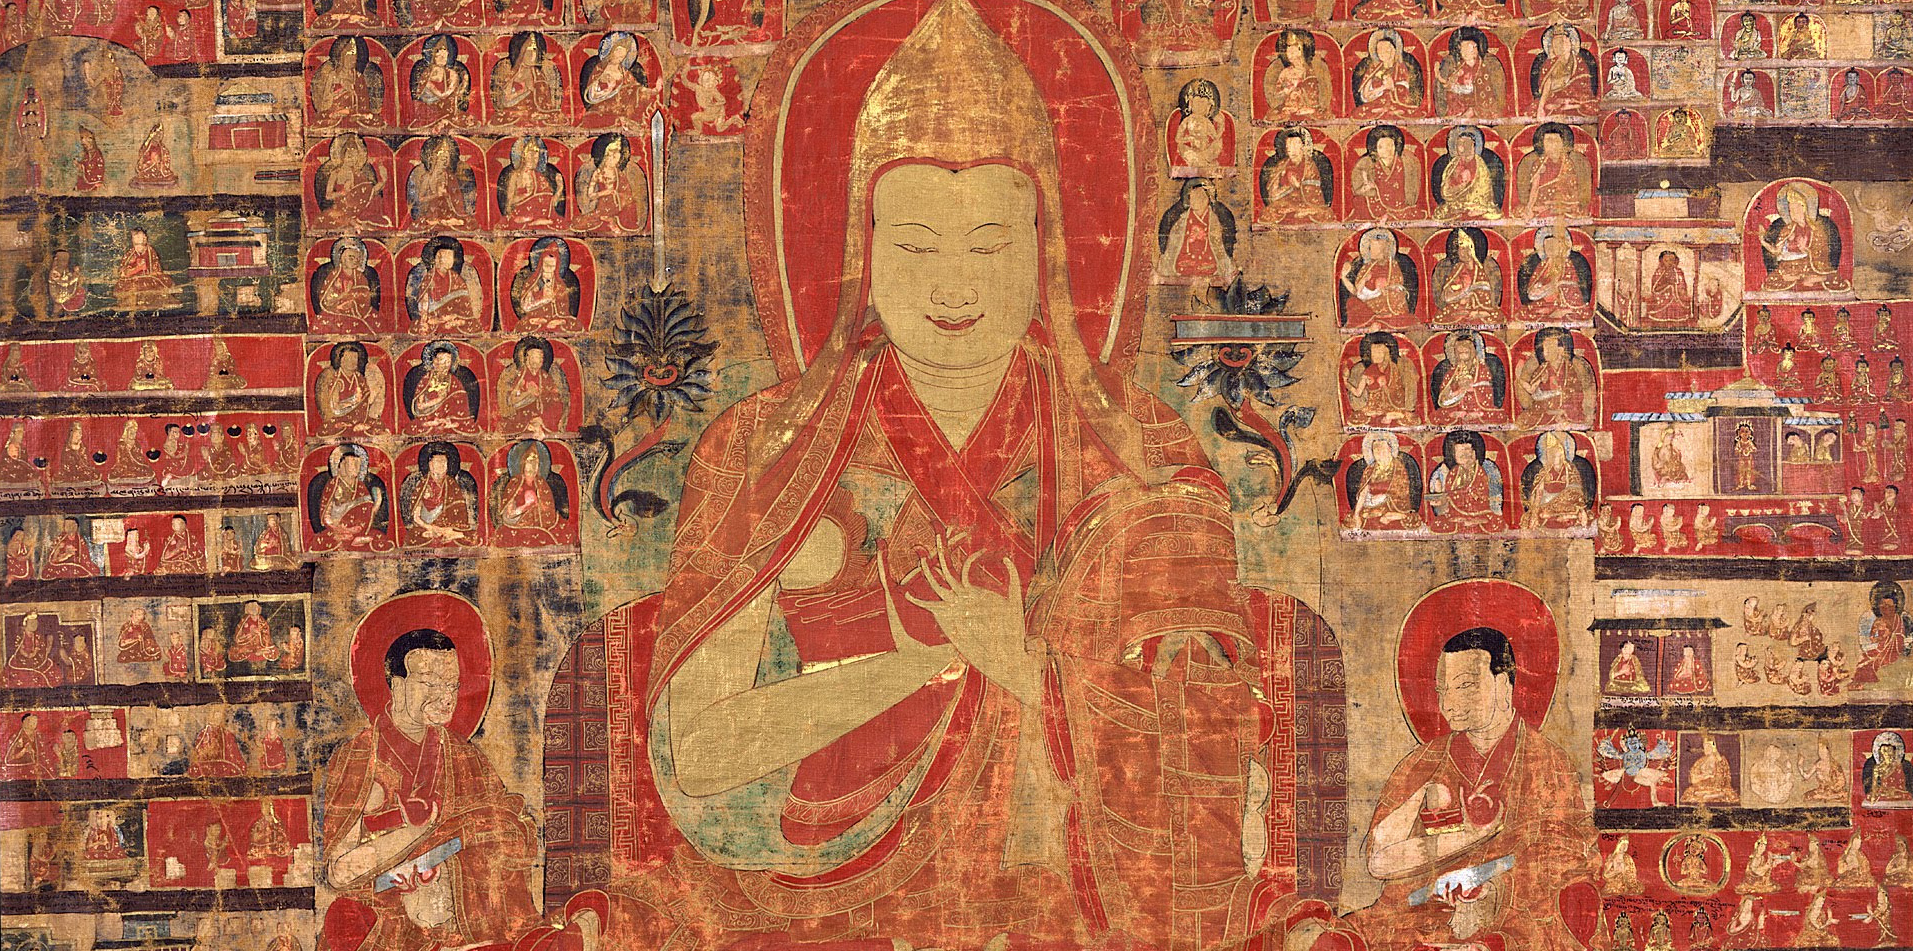 Tsongkhapa’s Praise for Dependent Relativity